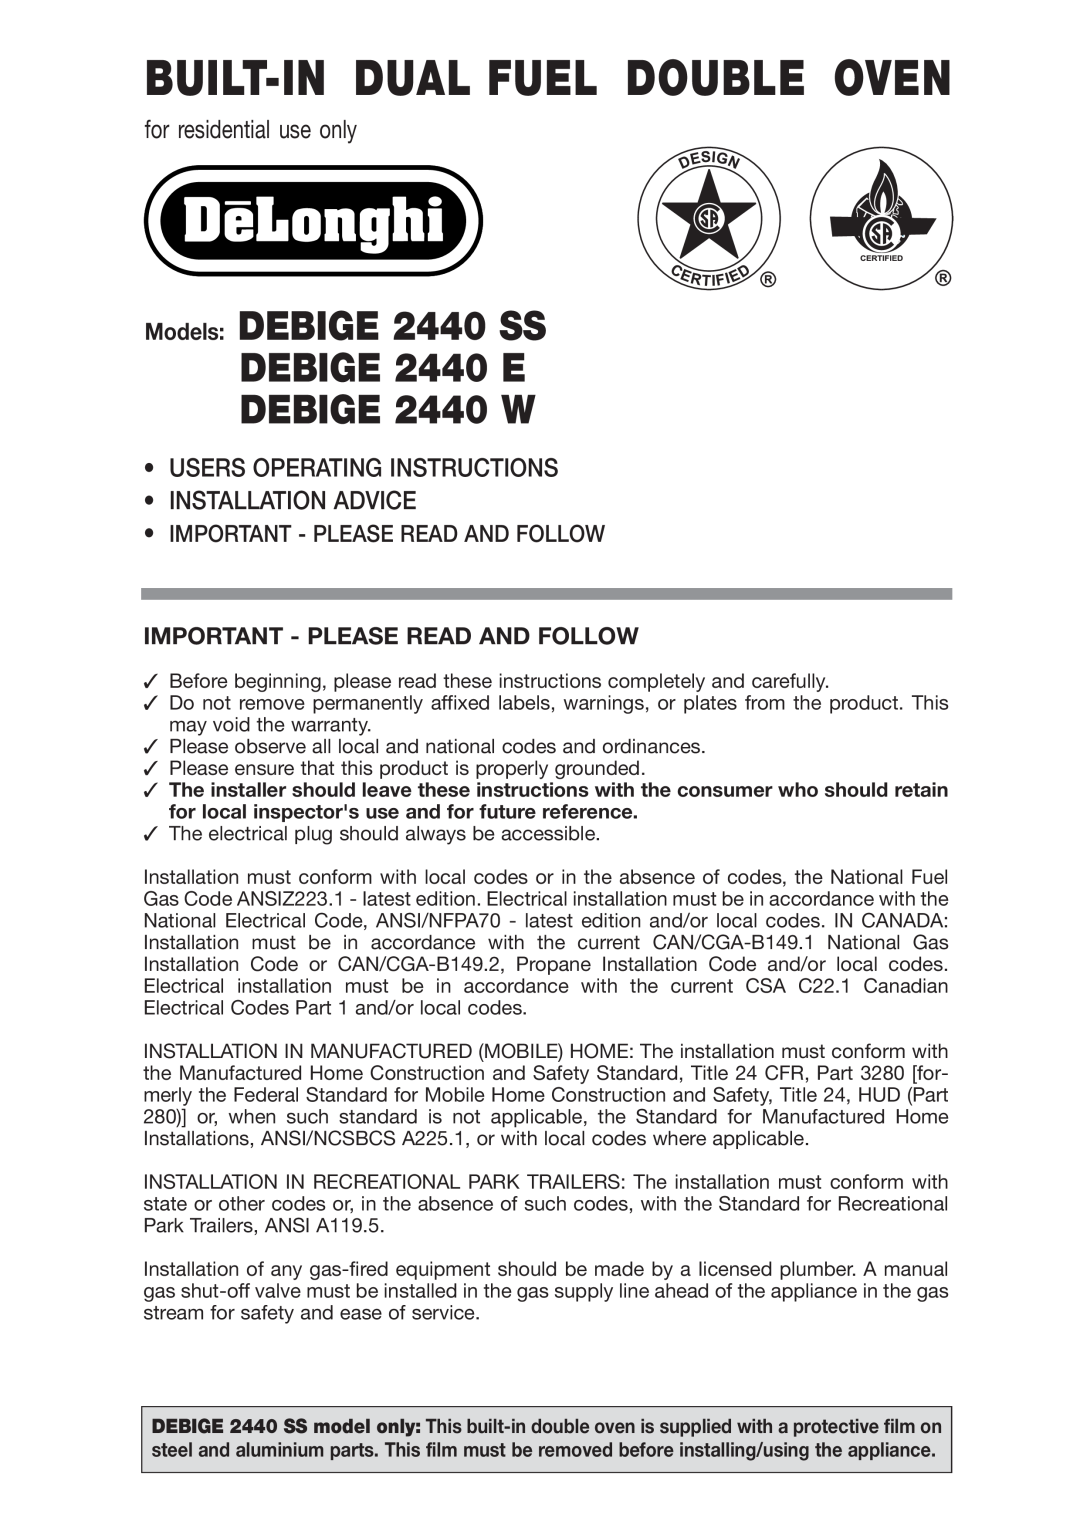 DeLonghi DEBIGE 2440 SS warranty Important - Please Read And Follow, Built-Indual Fuel Double Oven, DEBIGE 2440 W 